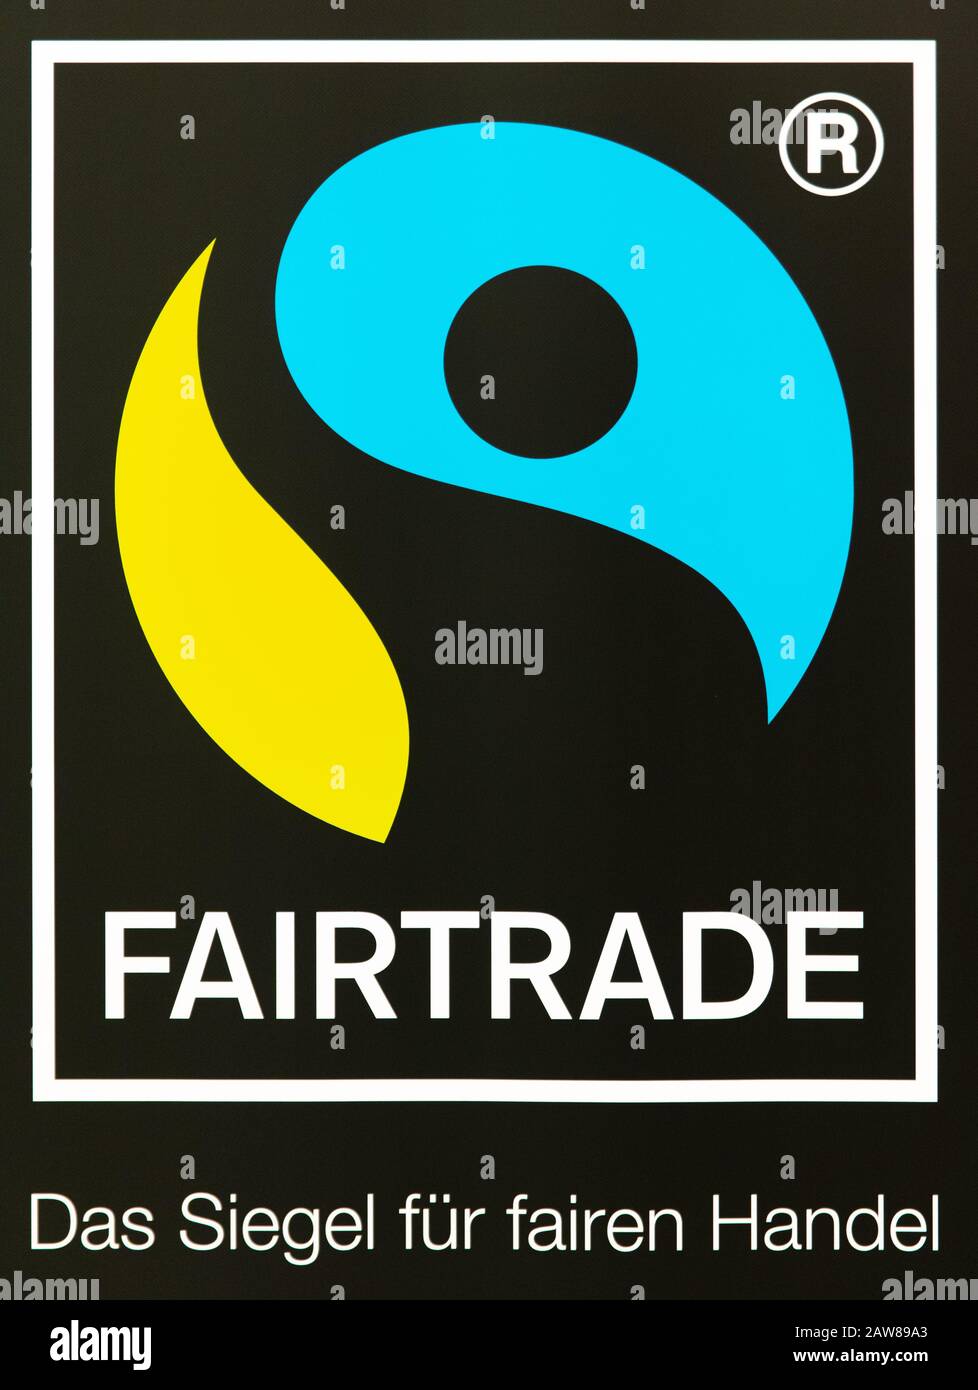 Client Logos — The FareTrade